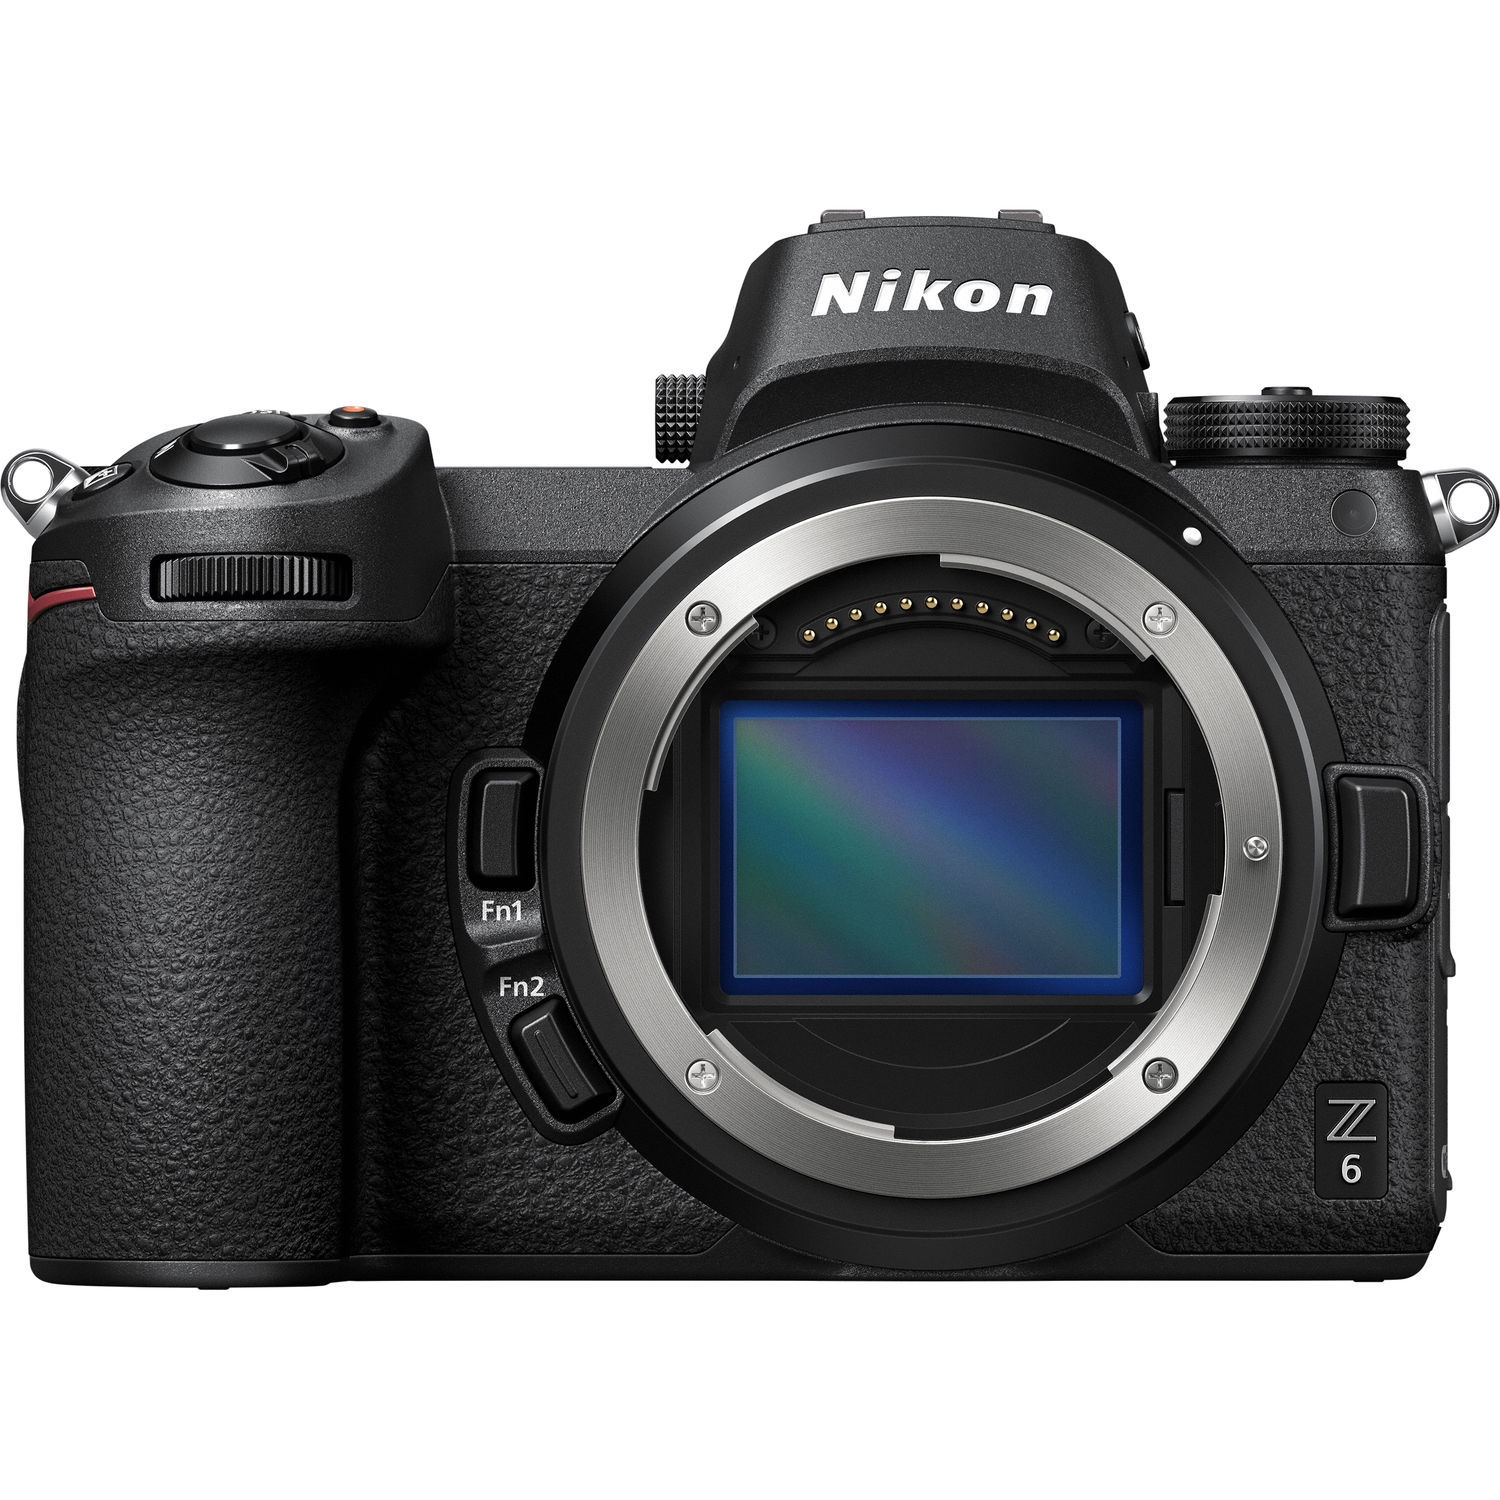 Nikon Z6 24.5 Megapixel Mirrorless Camera Body Only, Black - image 3 of 5